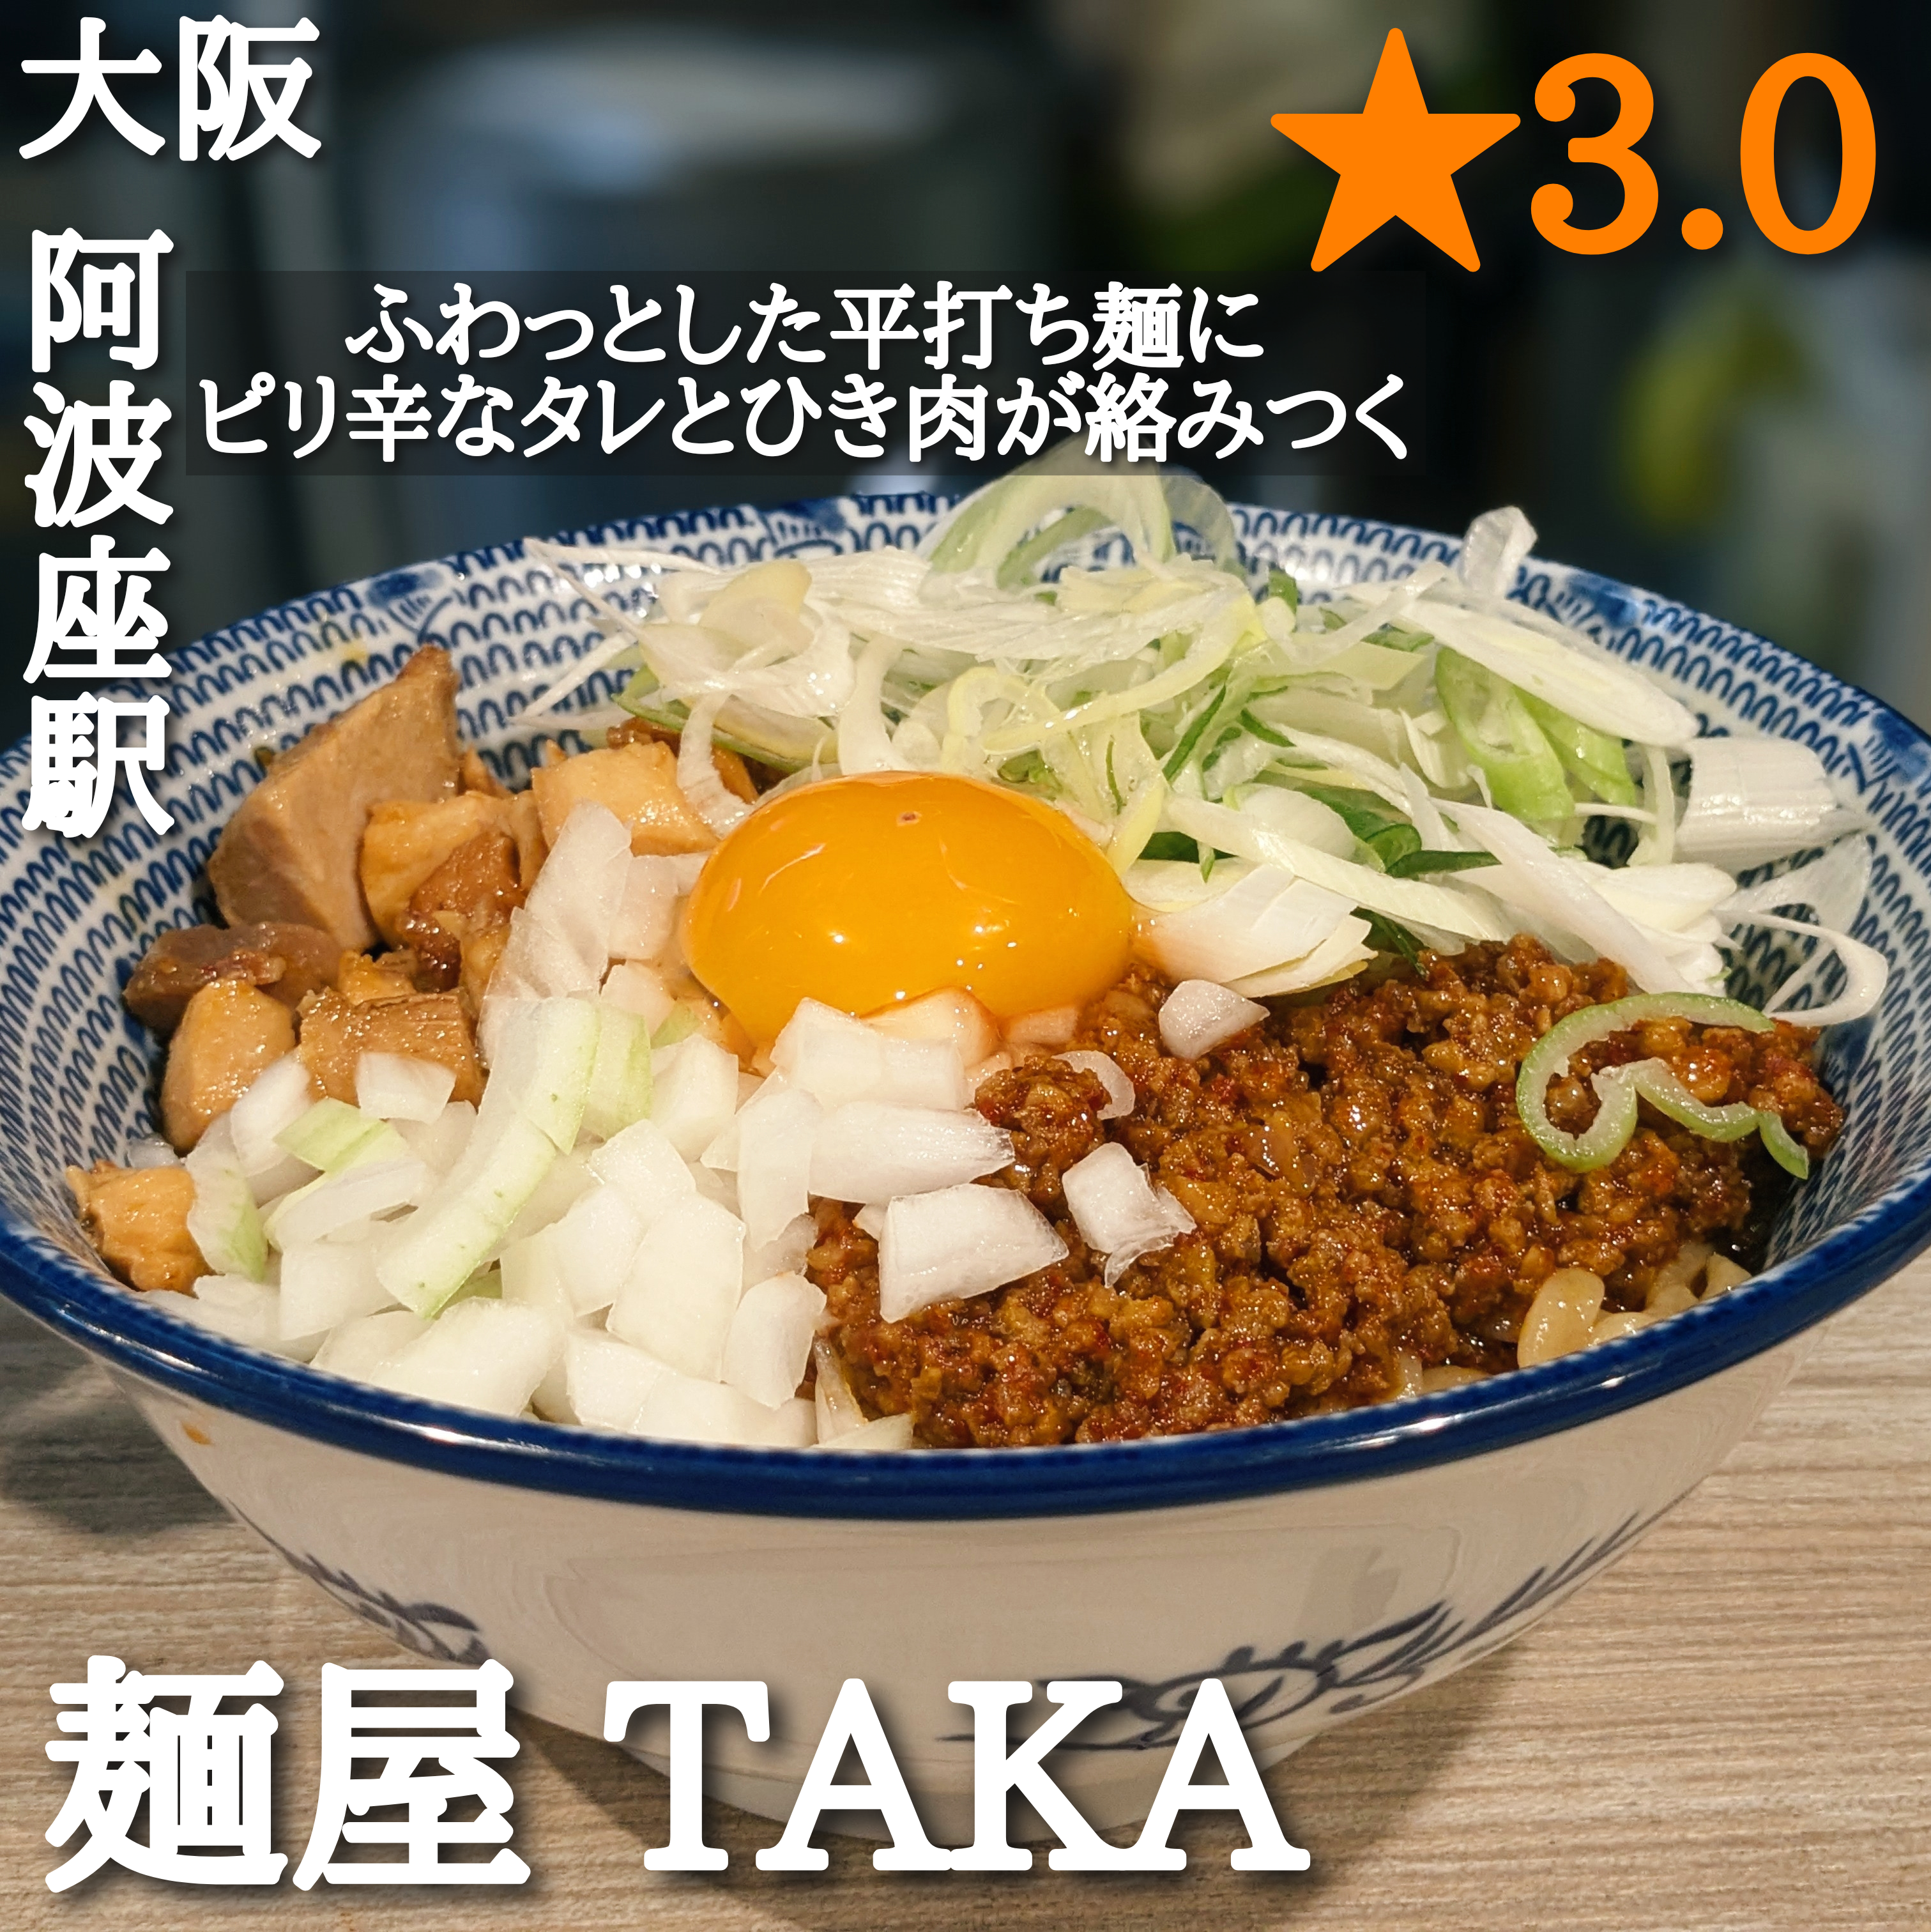 麺屋taka(阿波座駅・ラーメン、混ぜそば、担々麺)